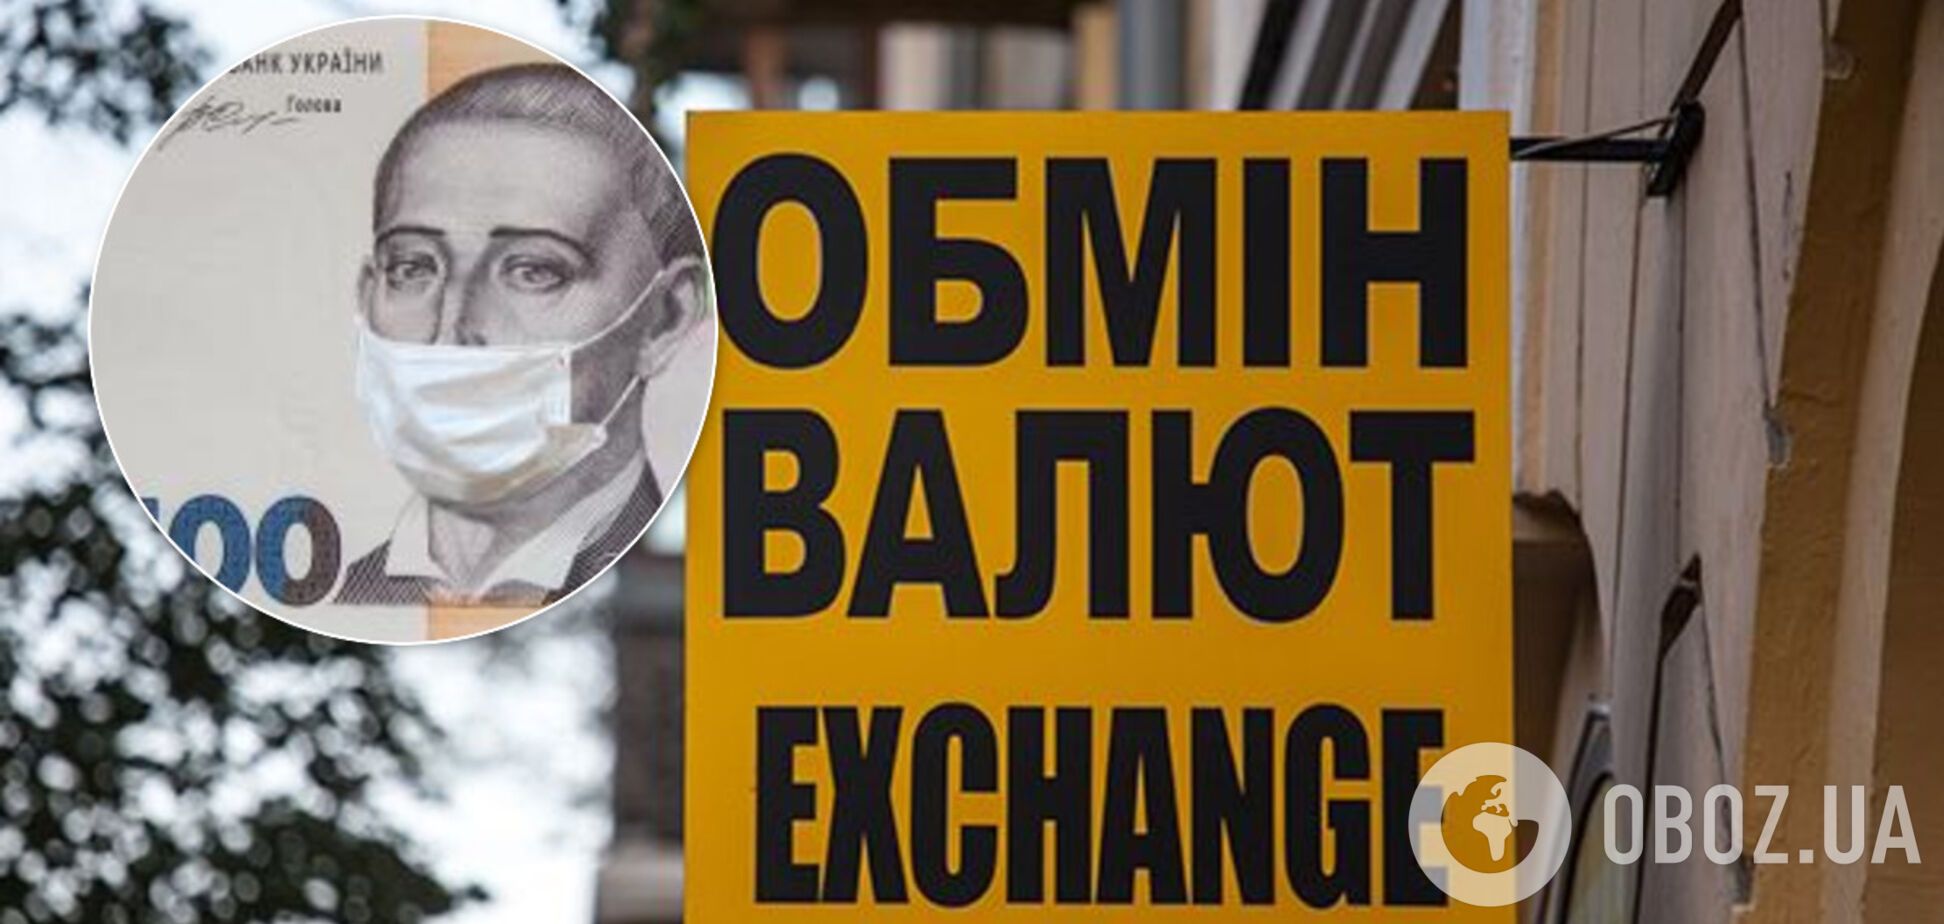 Долар і євро в Україні подорожчали: скільки коштують у банках і на чорному ринку